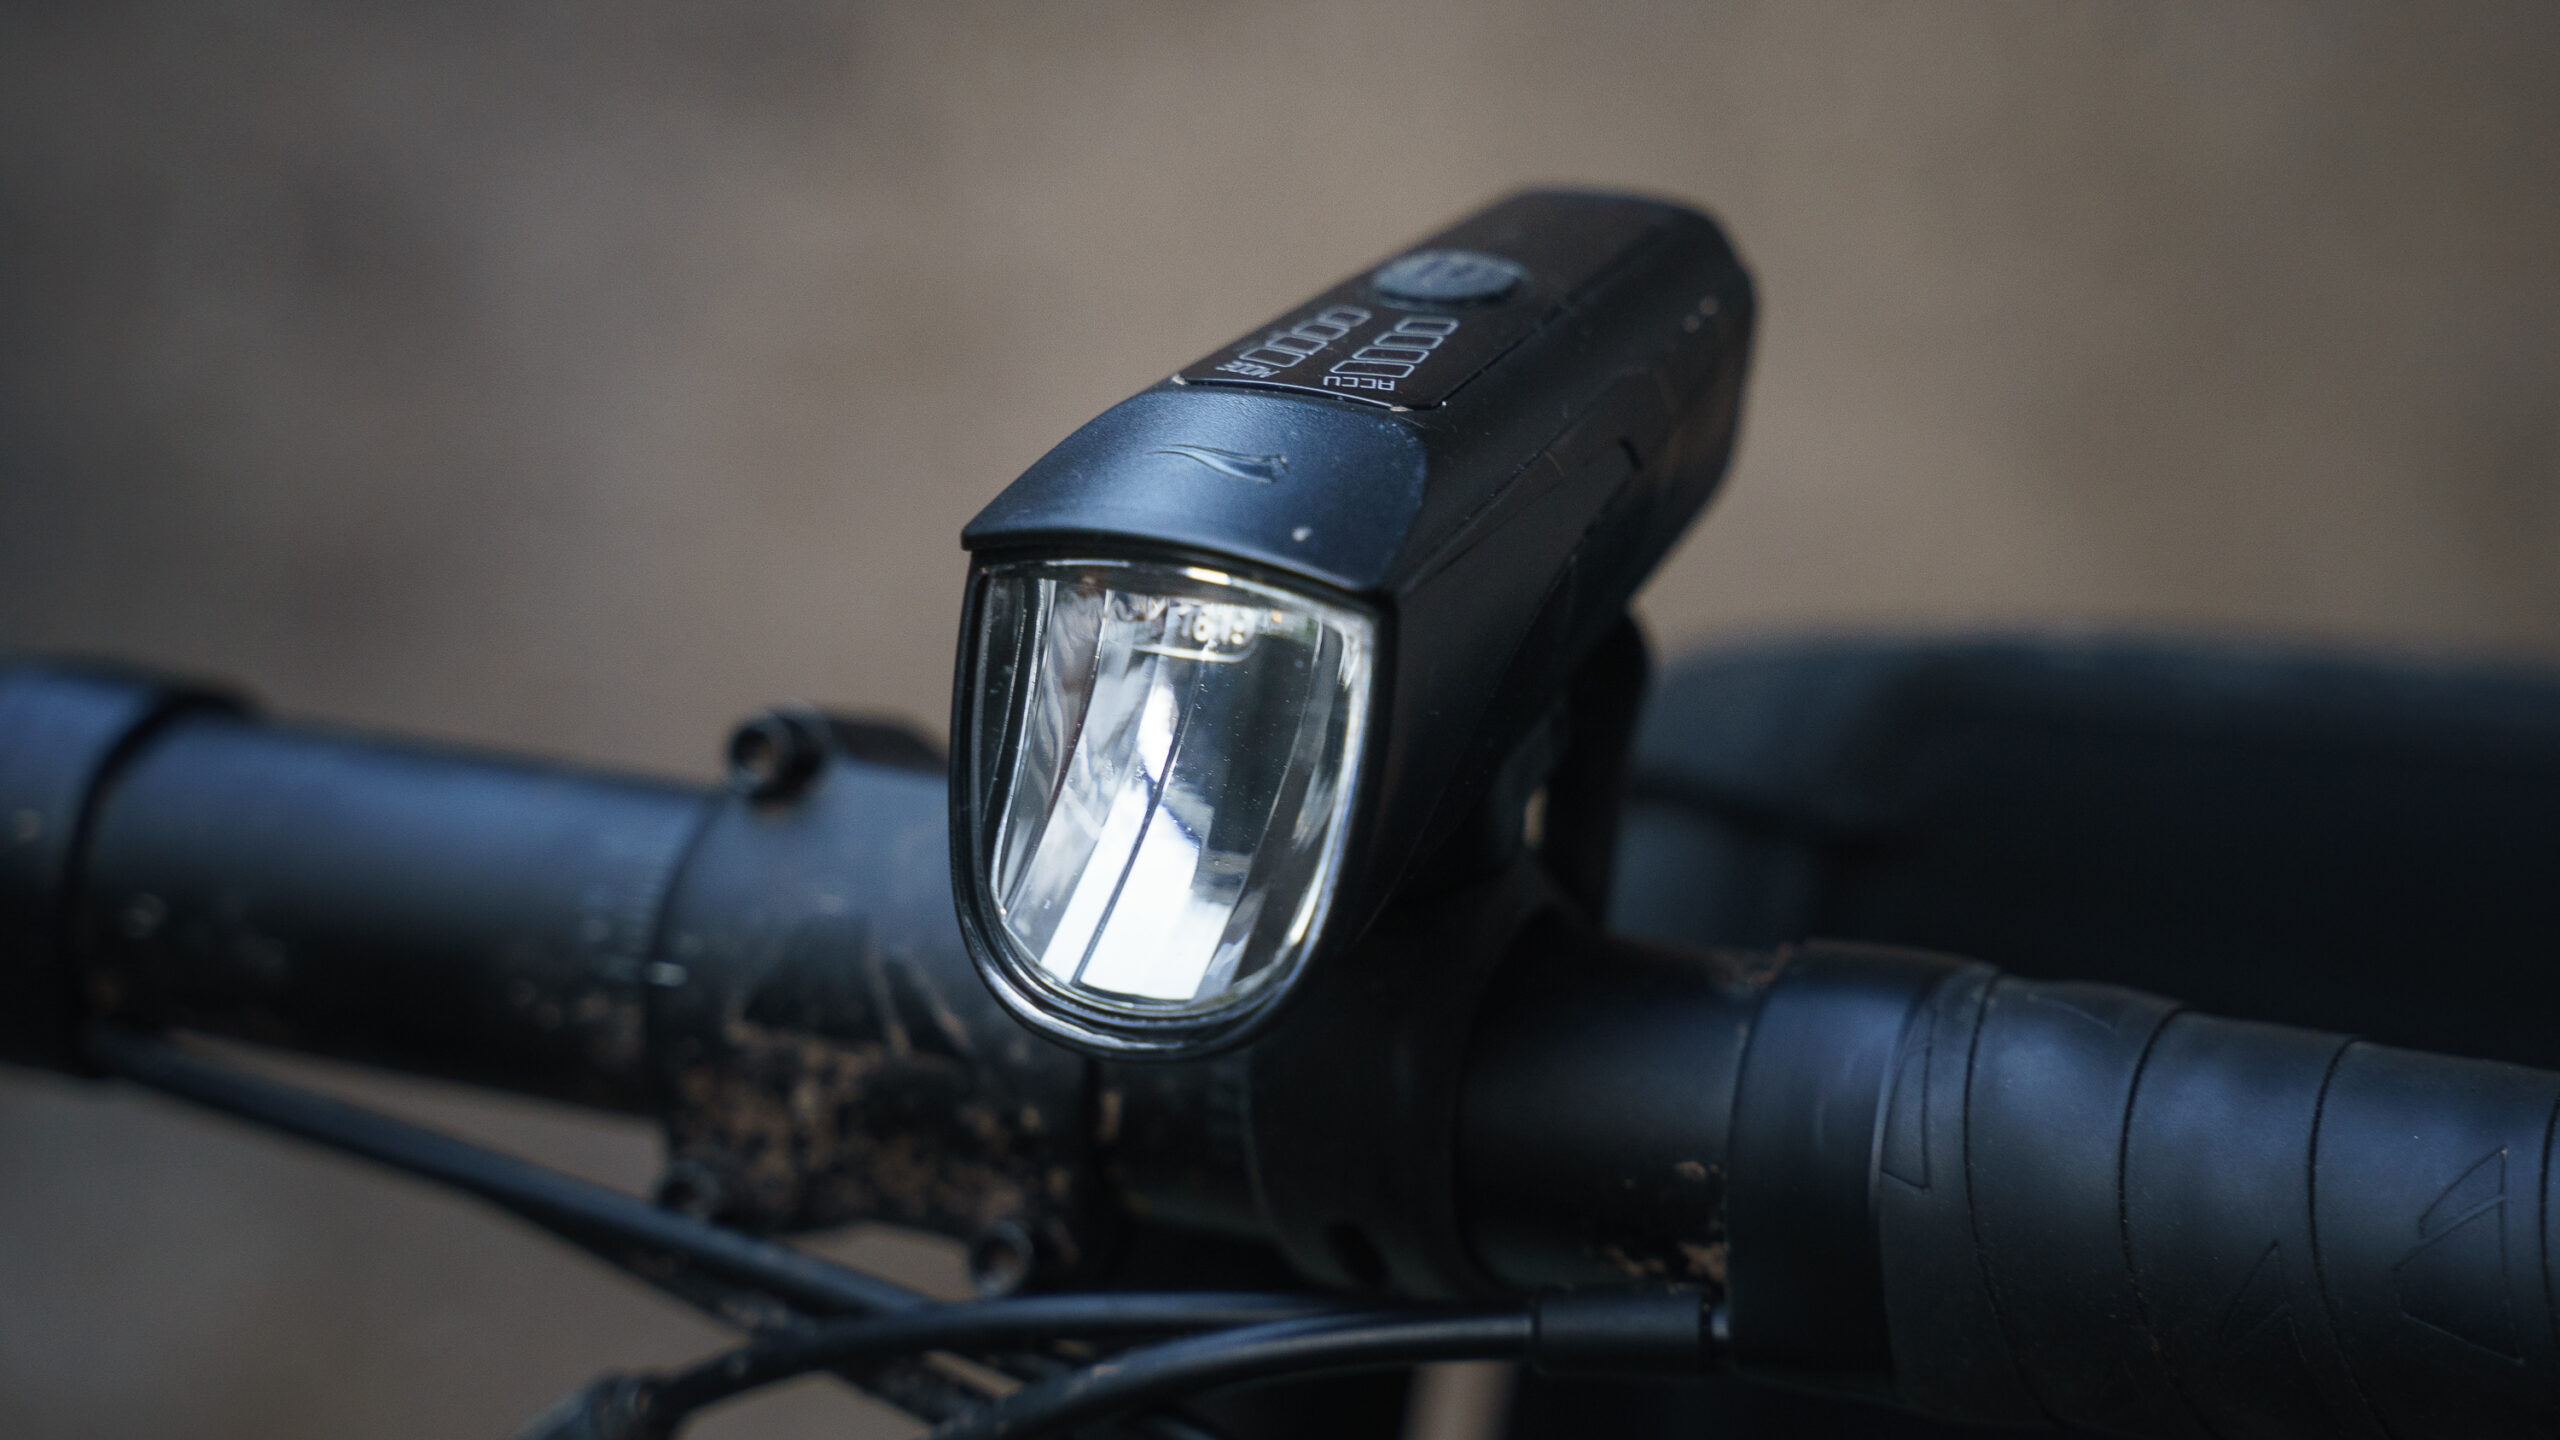 Crivit Fahrrad-Licht Test: Was kann die Lidl-Leuchte? - Rennrad-News